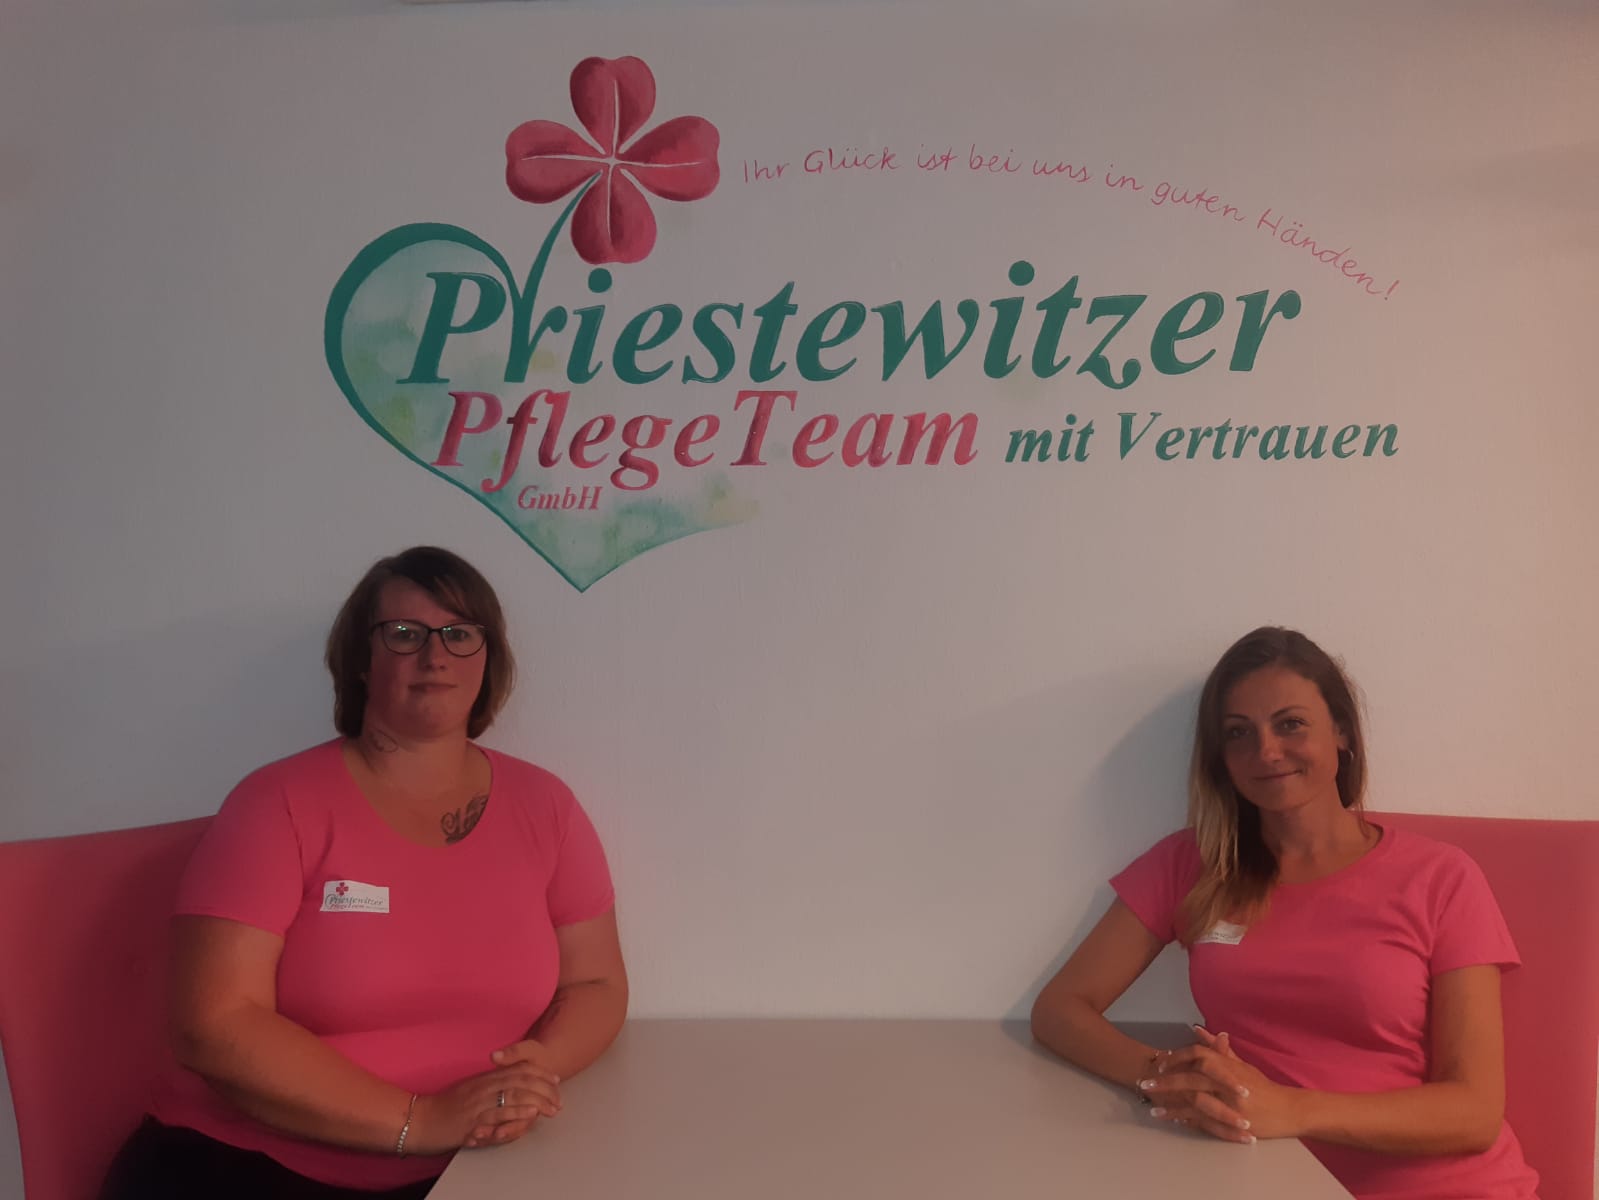 Priestewitzer PflegeTeam mit Vertrauen GmbH